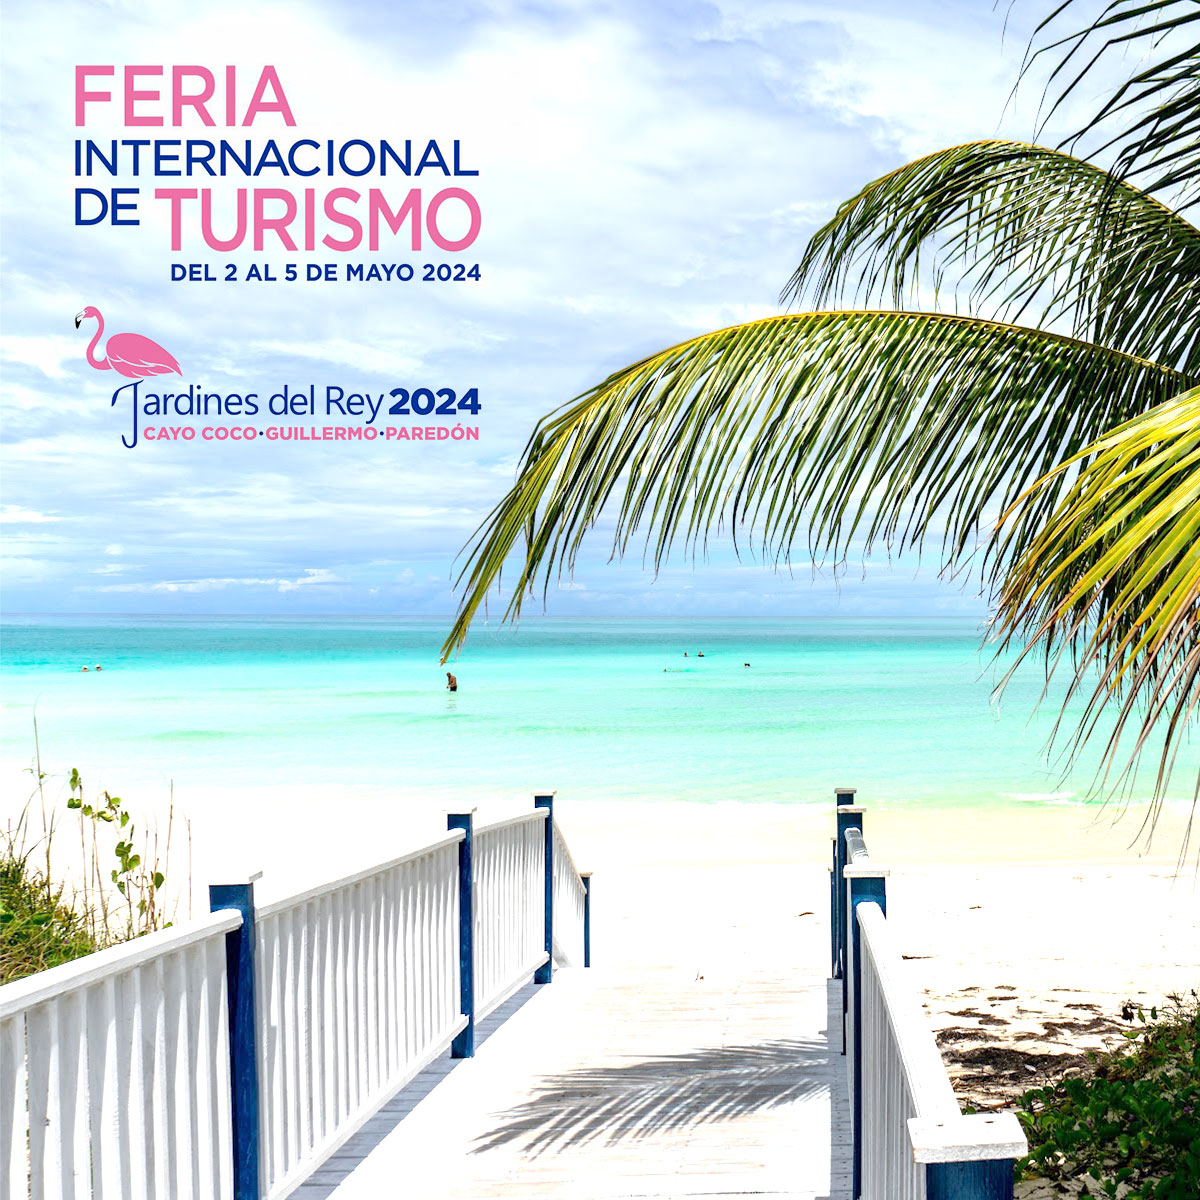 #AduanaInforma] Inicia la edición 42 de la Feria Internacional del Turismo FITCuba 2024, la cual se ha dedicado en esta ocasión a América Latina y el Caribe. En la Feria FITCuba se desarrollan actividades de carácter comercial. . . . #FronteraSegura #AduanadeCuba #ComercioSeguro